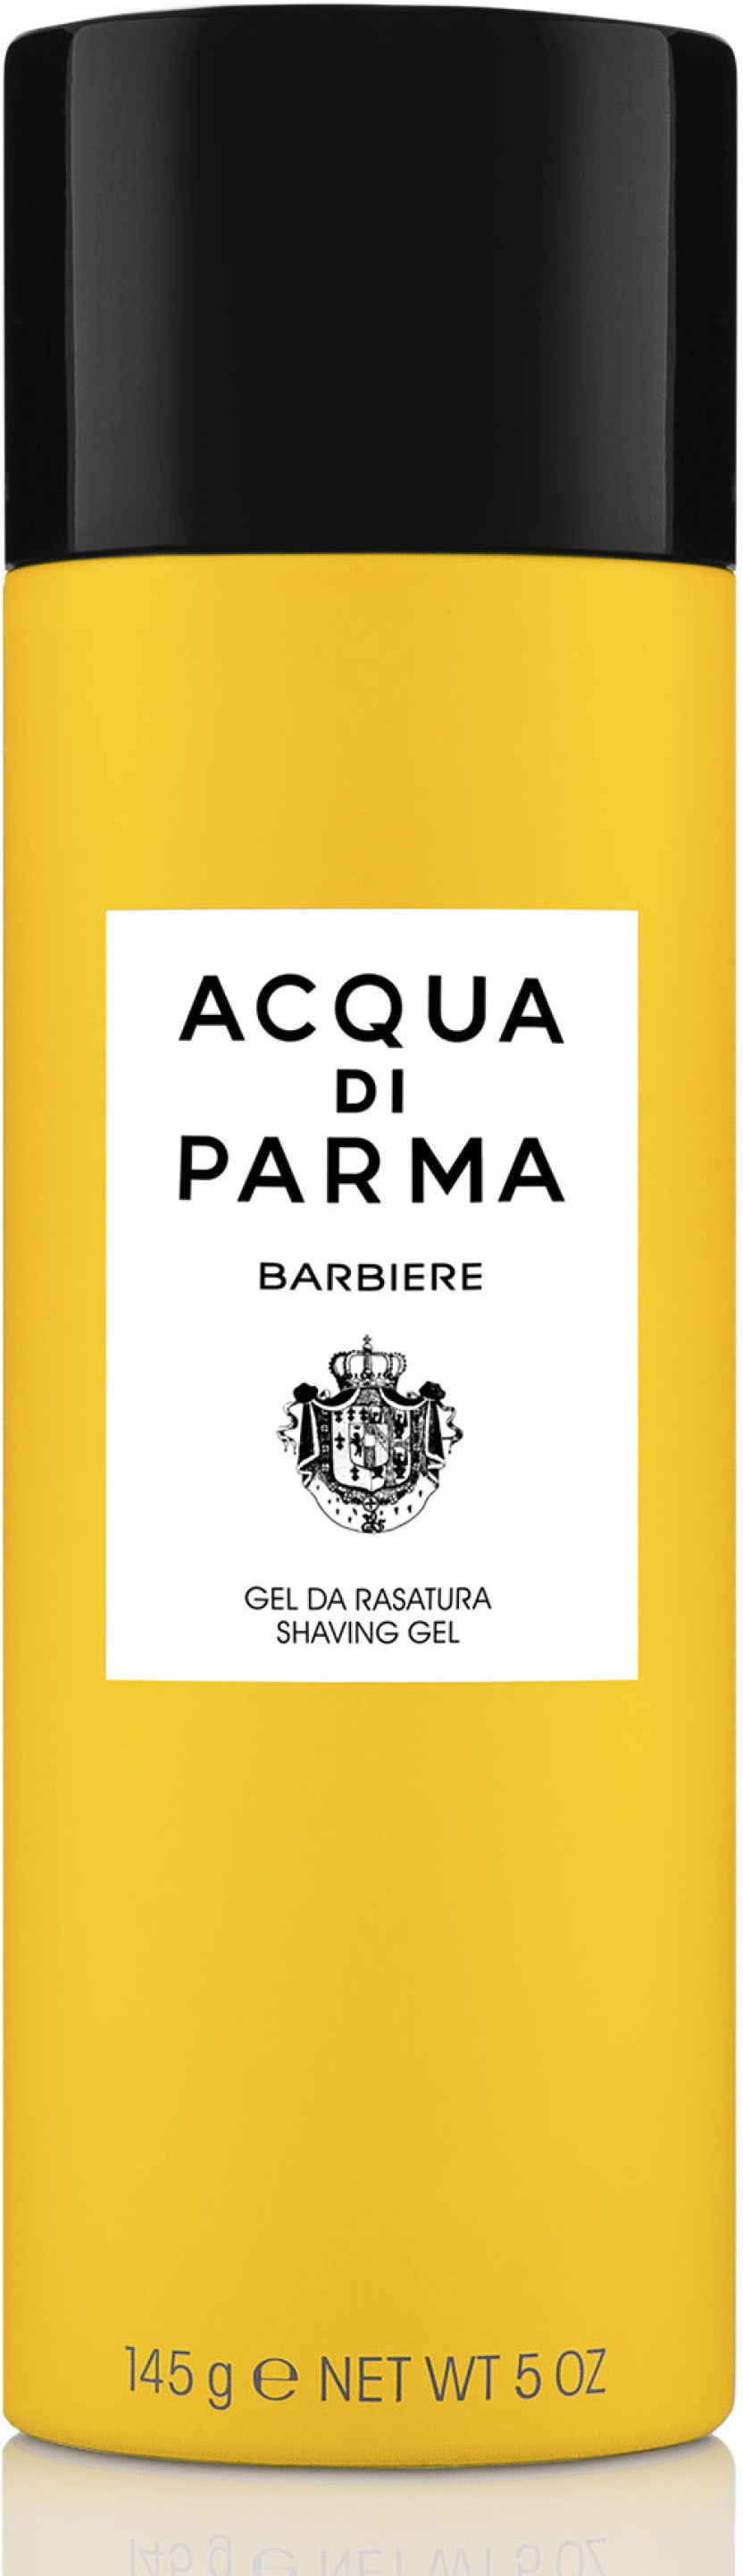 Acqua di Parma Barbiere Collection Shaving Gel 145 g